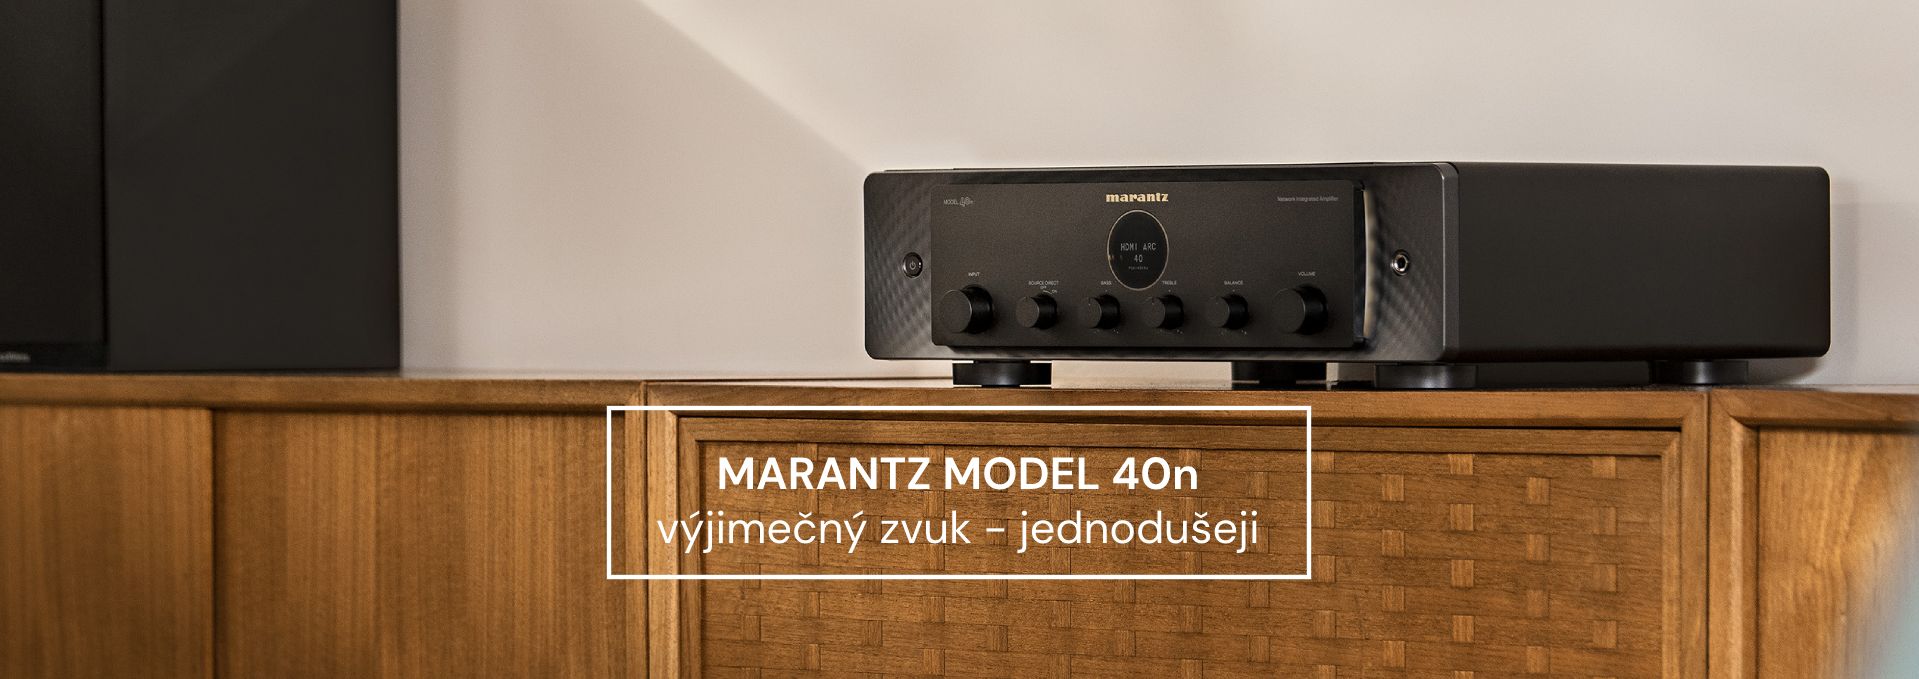 Marantz MODEL 40n